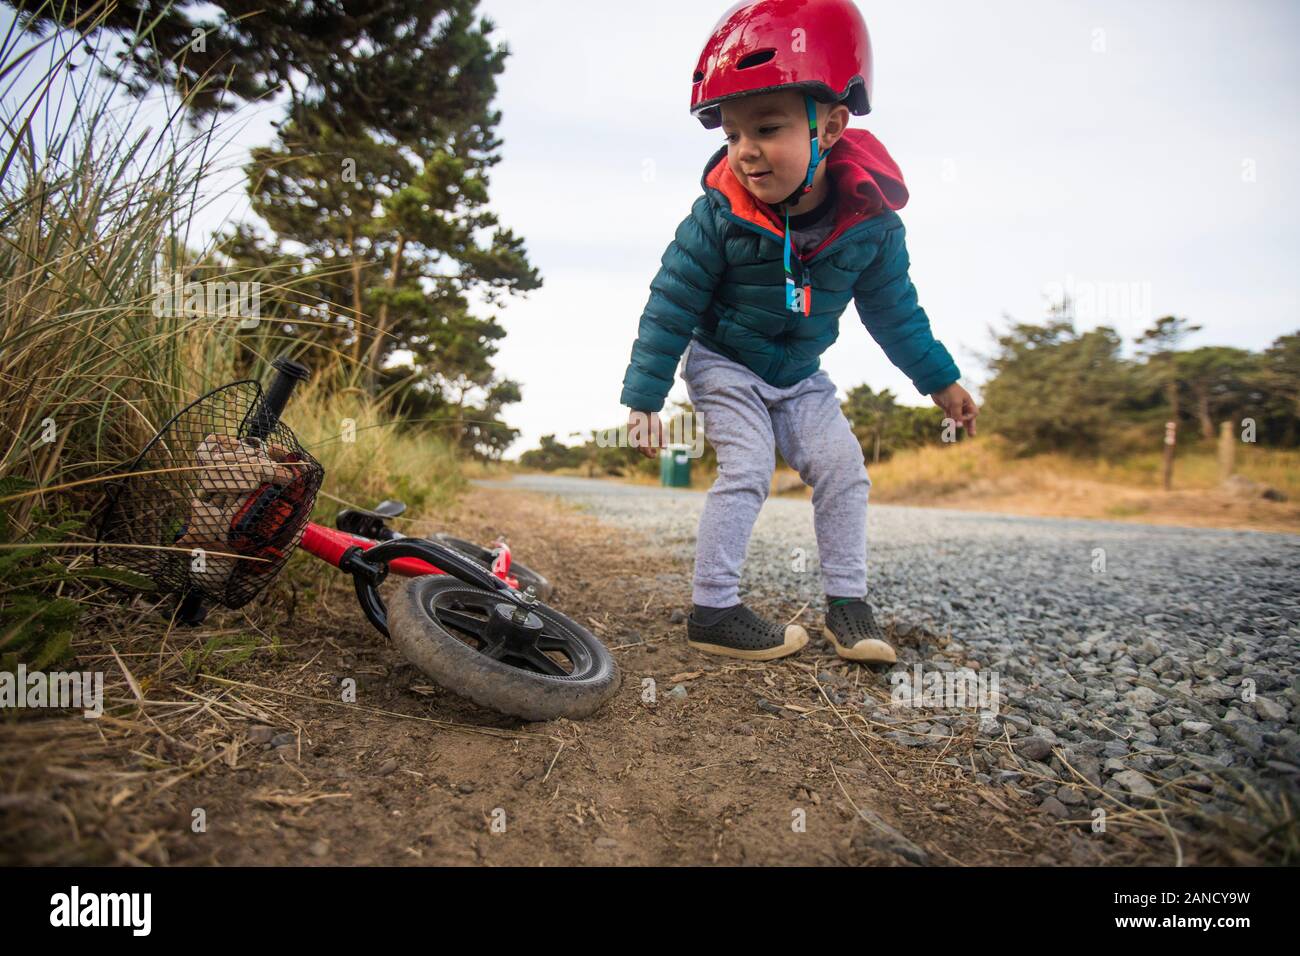 El niño se inclina para recoger la bicicleta. Foto de stock